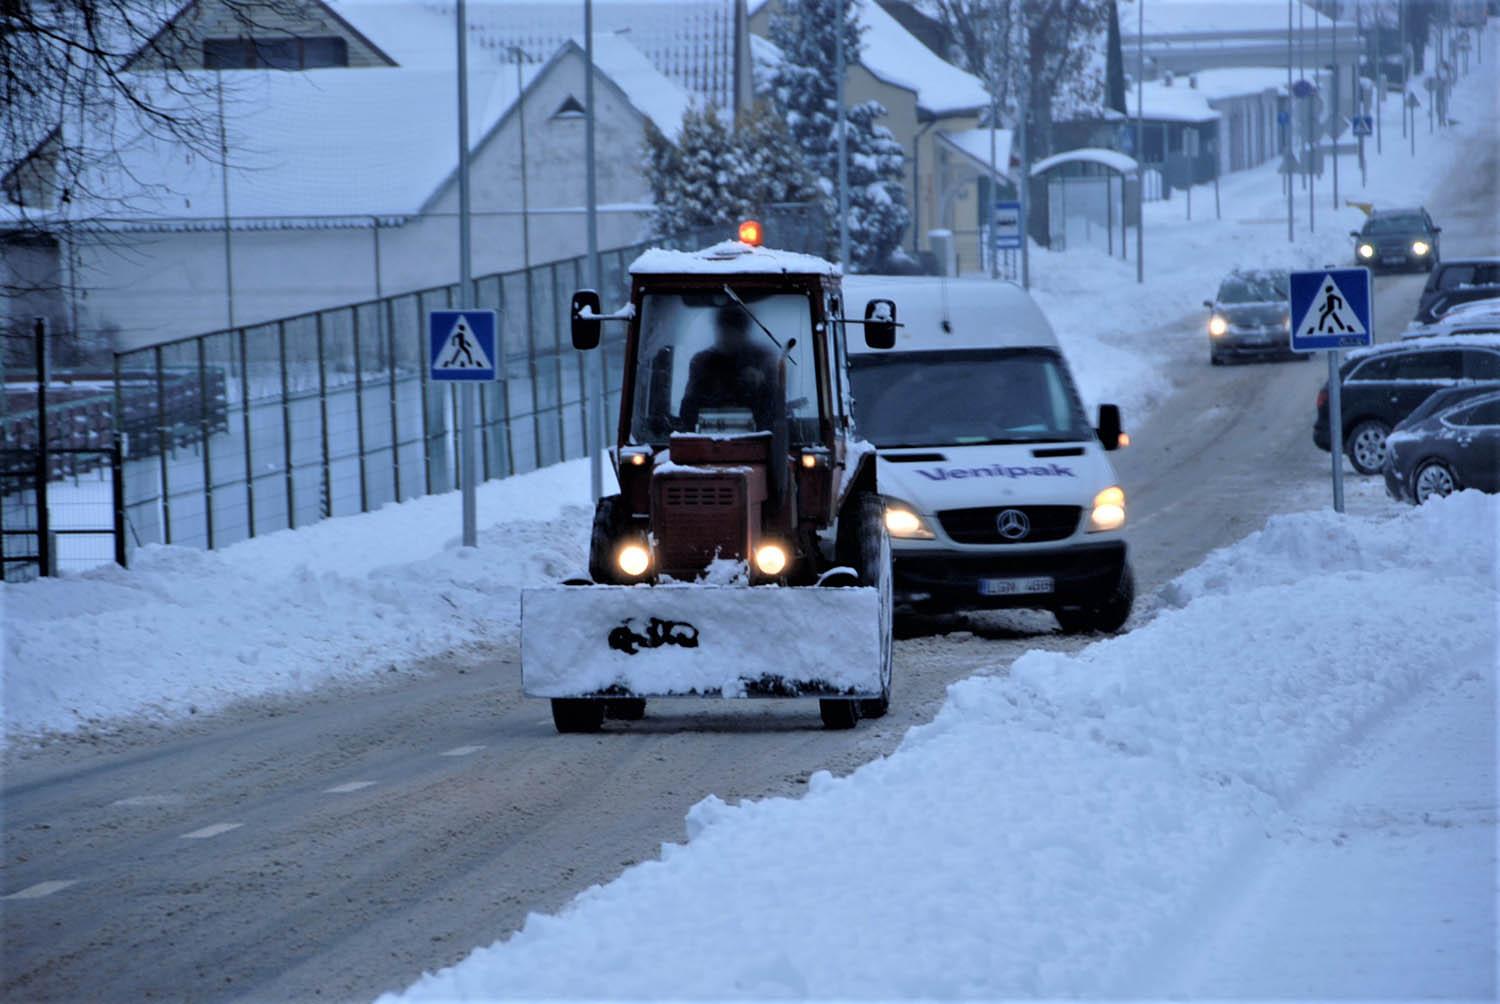 Pirmas rimtas snygis sukėlė rūpesčių / Gedimino Nemunaičio nuotr. Po miestą zuja sniego valymo technika.